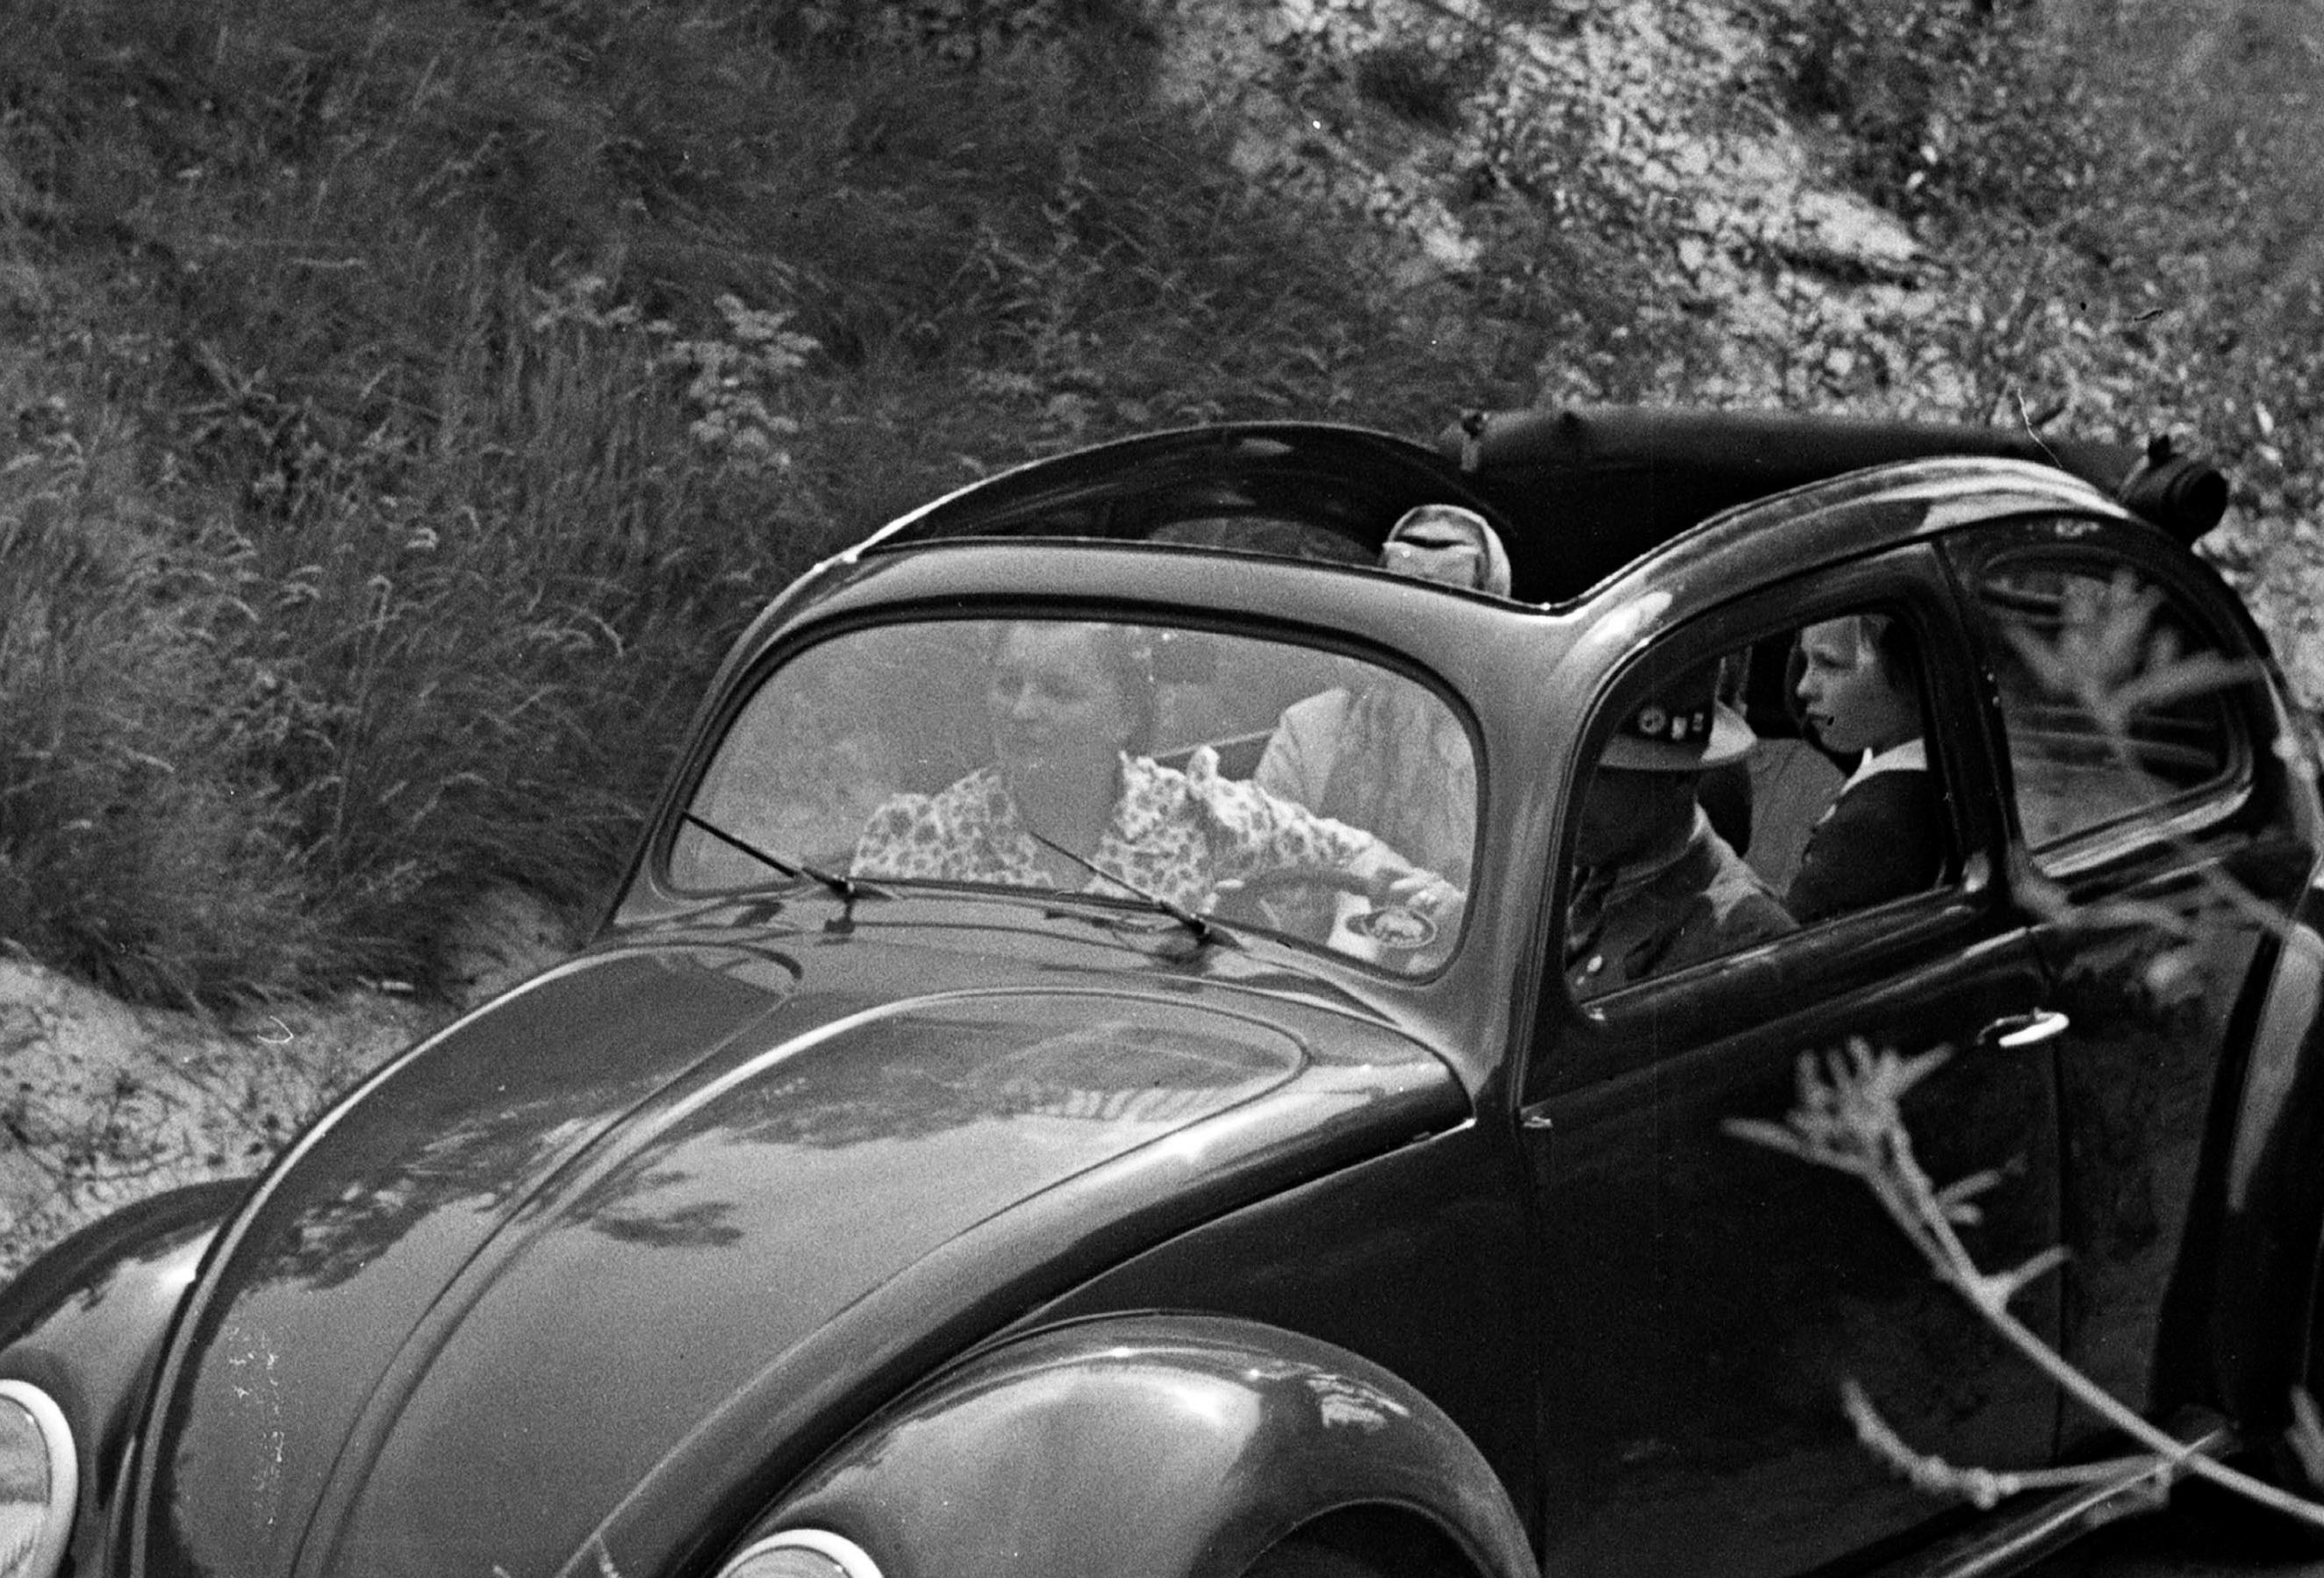  Voyage en voiture dans le scarabée de Volkswagen, Allemagne, 1939 Imprimé ultérieurement  - Photograph de Karl Heinrich Lämmel